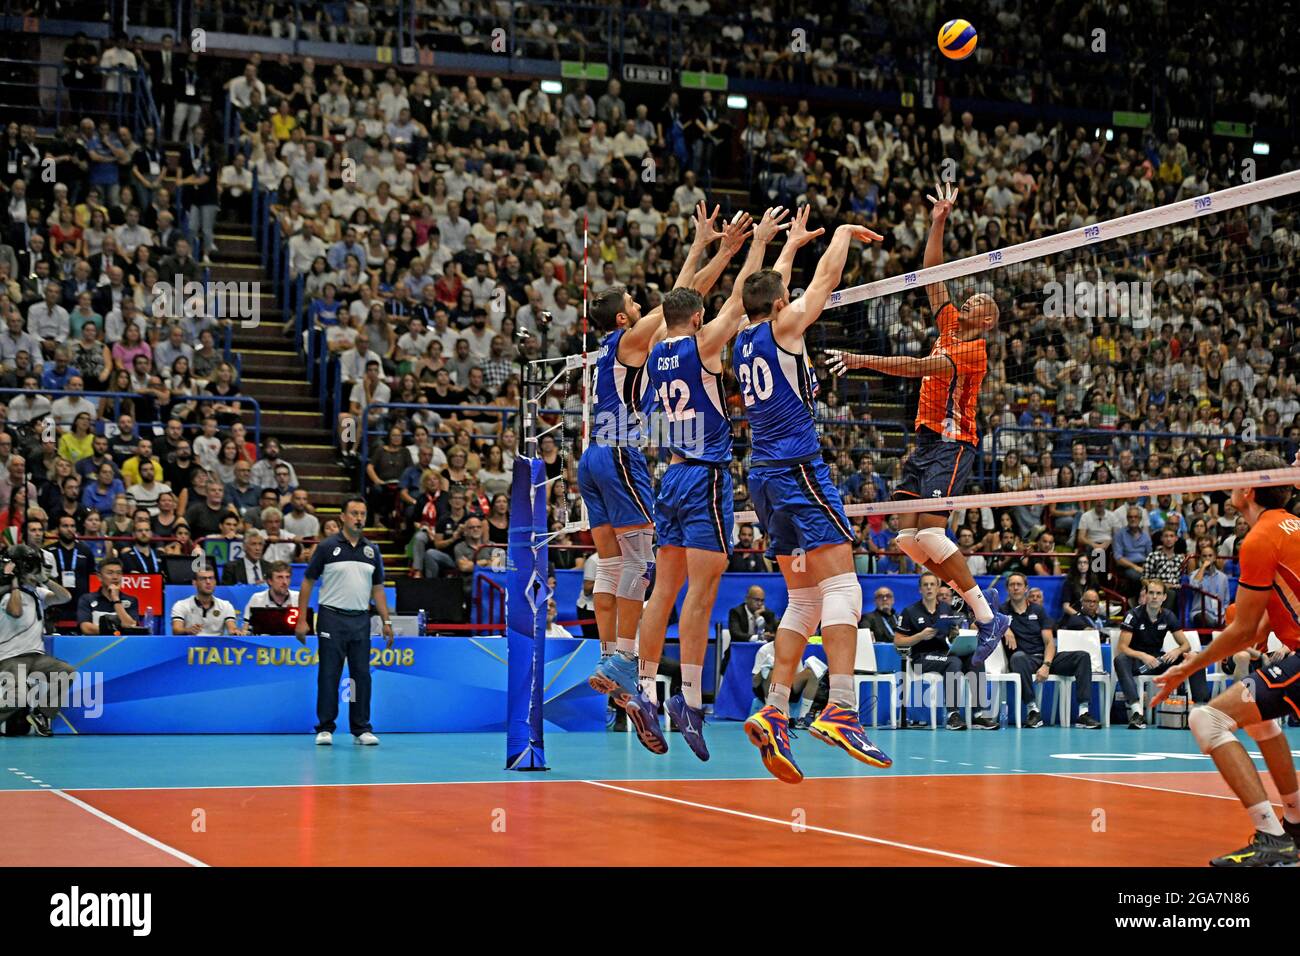 Championnat du monde de volley-ball masculin 2018, Italie contre pays-Bas,  à l'arène intérieure du Forum, à Milan Photo Stock - Alamy